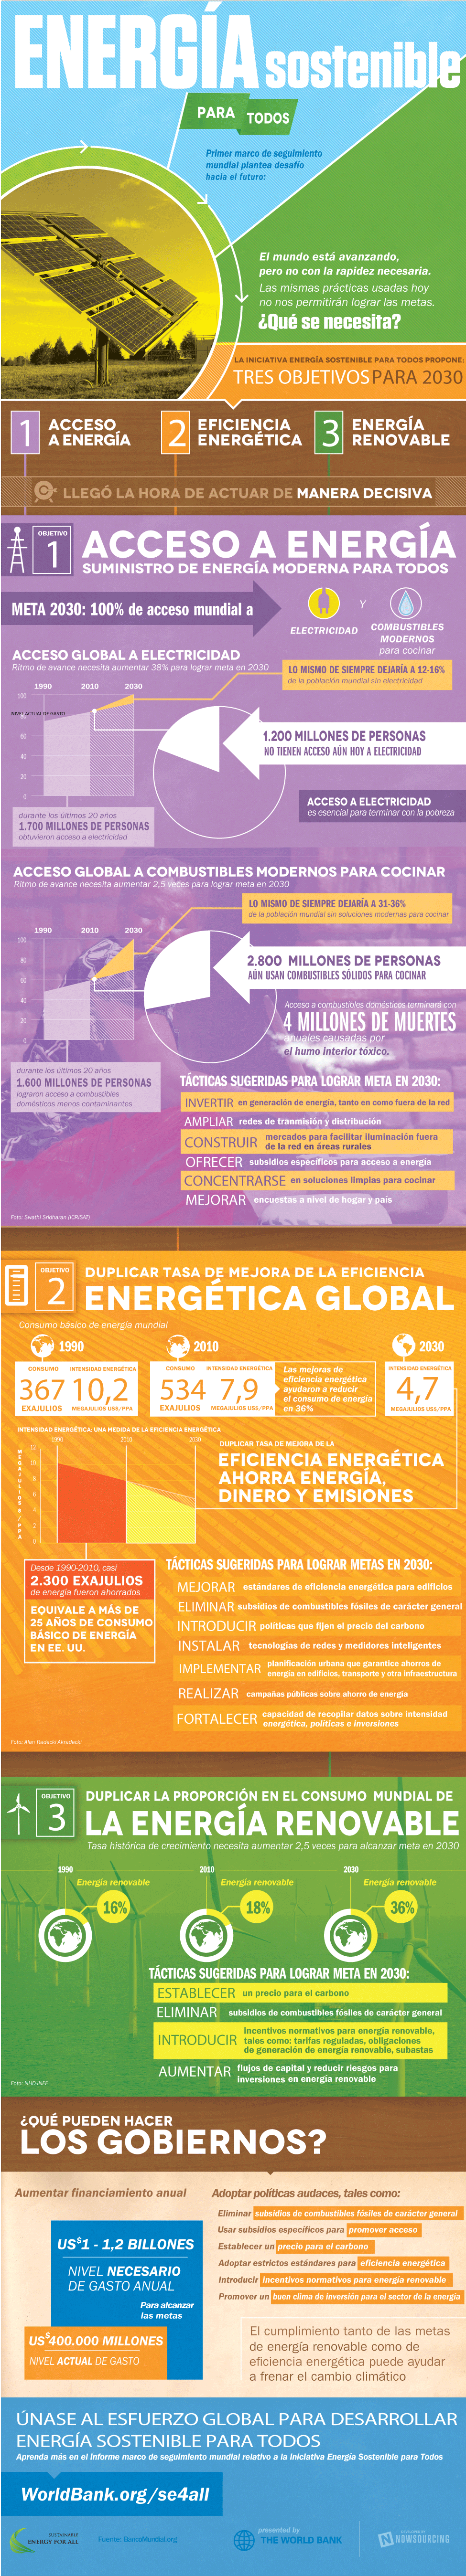 Energía sostenible para todos ¿Qué se necesita? Infographic